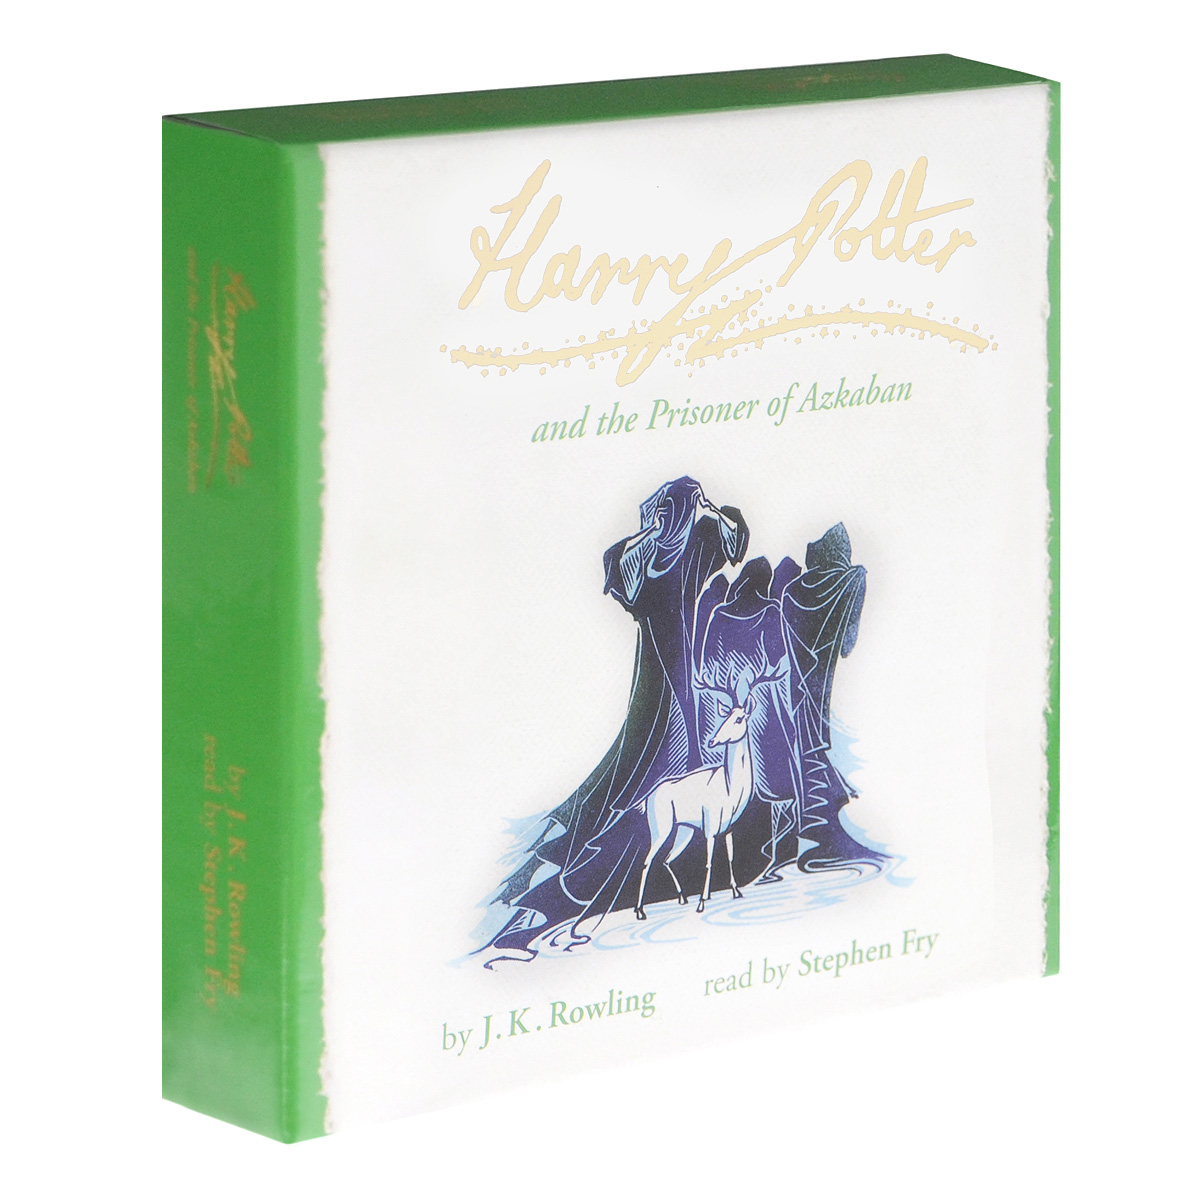 Harry Potter and the Prisoner of Azkaban (аудиокнига на 10 CD)